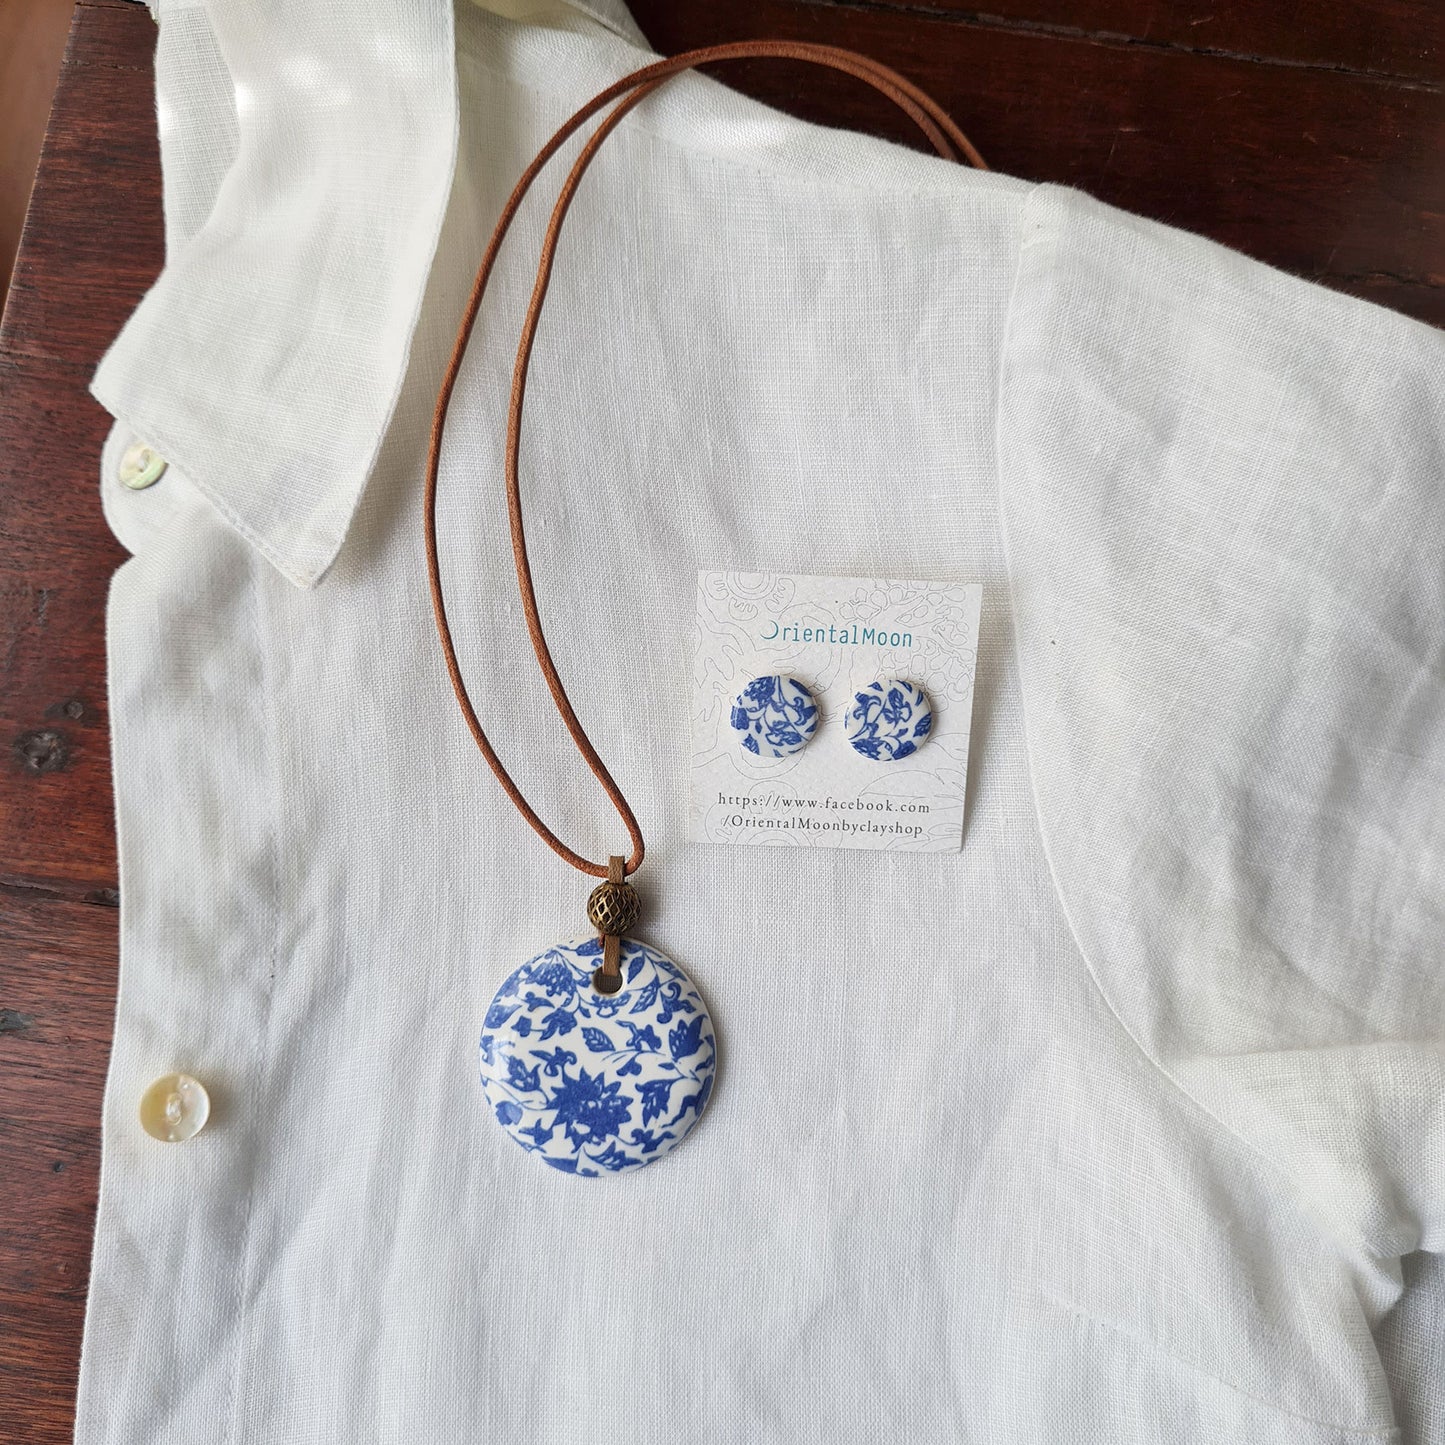 ฺBlue&white pattern on ceramic pendant set with earrings OM11 ชุดสร้อยคอจี้เซรามิคพร้อมต่างหูเข้าชุด OM11